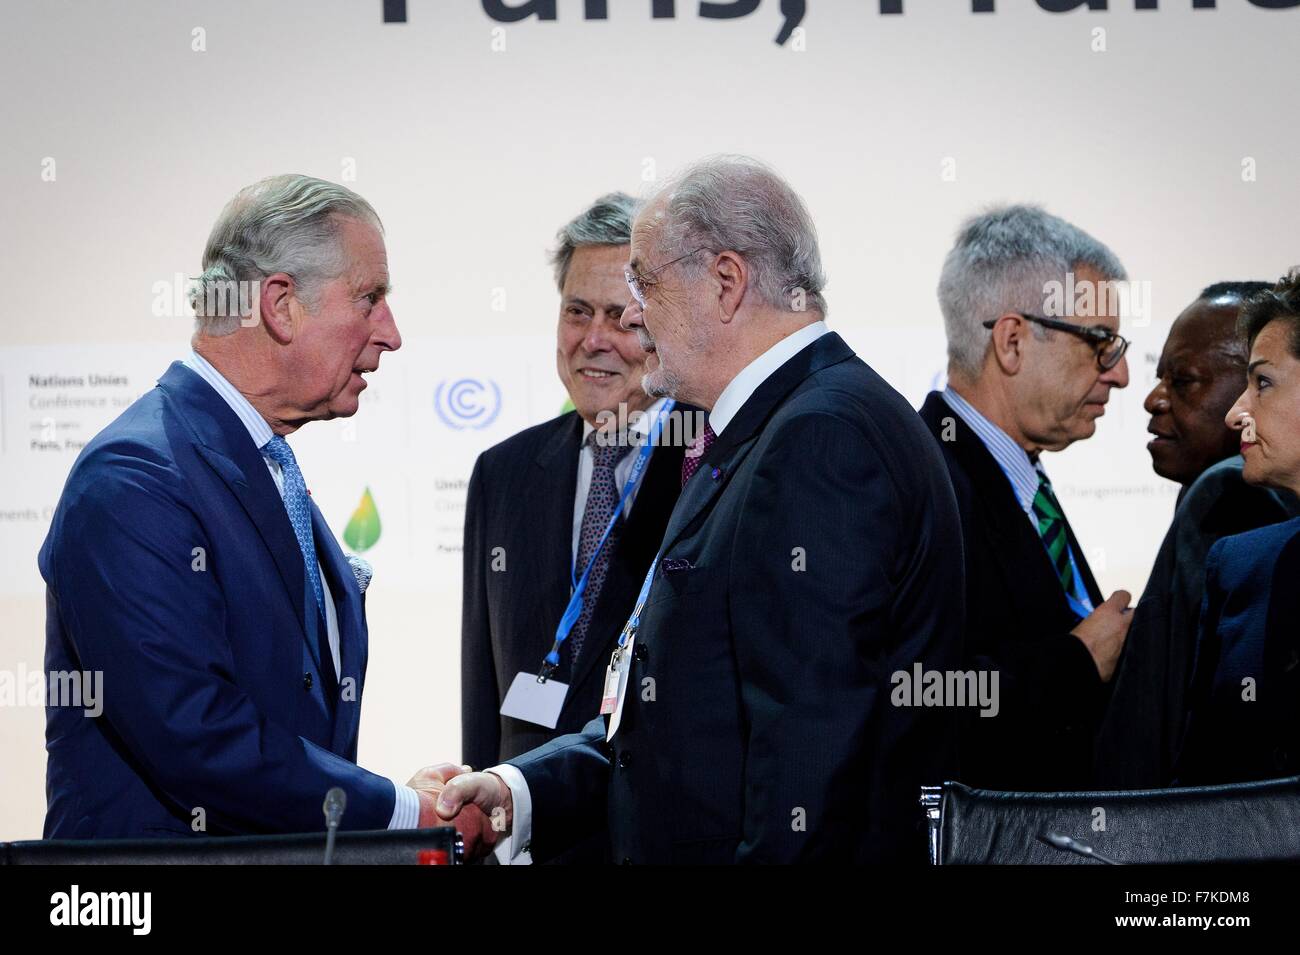 Le Bourget, France. 30 novembre, 2015. Le Prince Charles est accueilli à la session plénière de la COP21, Conférence des Nations Unies sur le changement climatique au nom du Royaume-Uni le 30 novembre 2015 en dehors de Paris Le Bourget, France. Banque D'Images